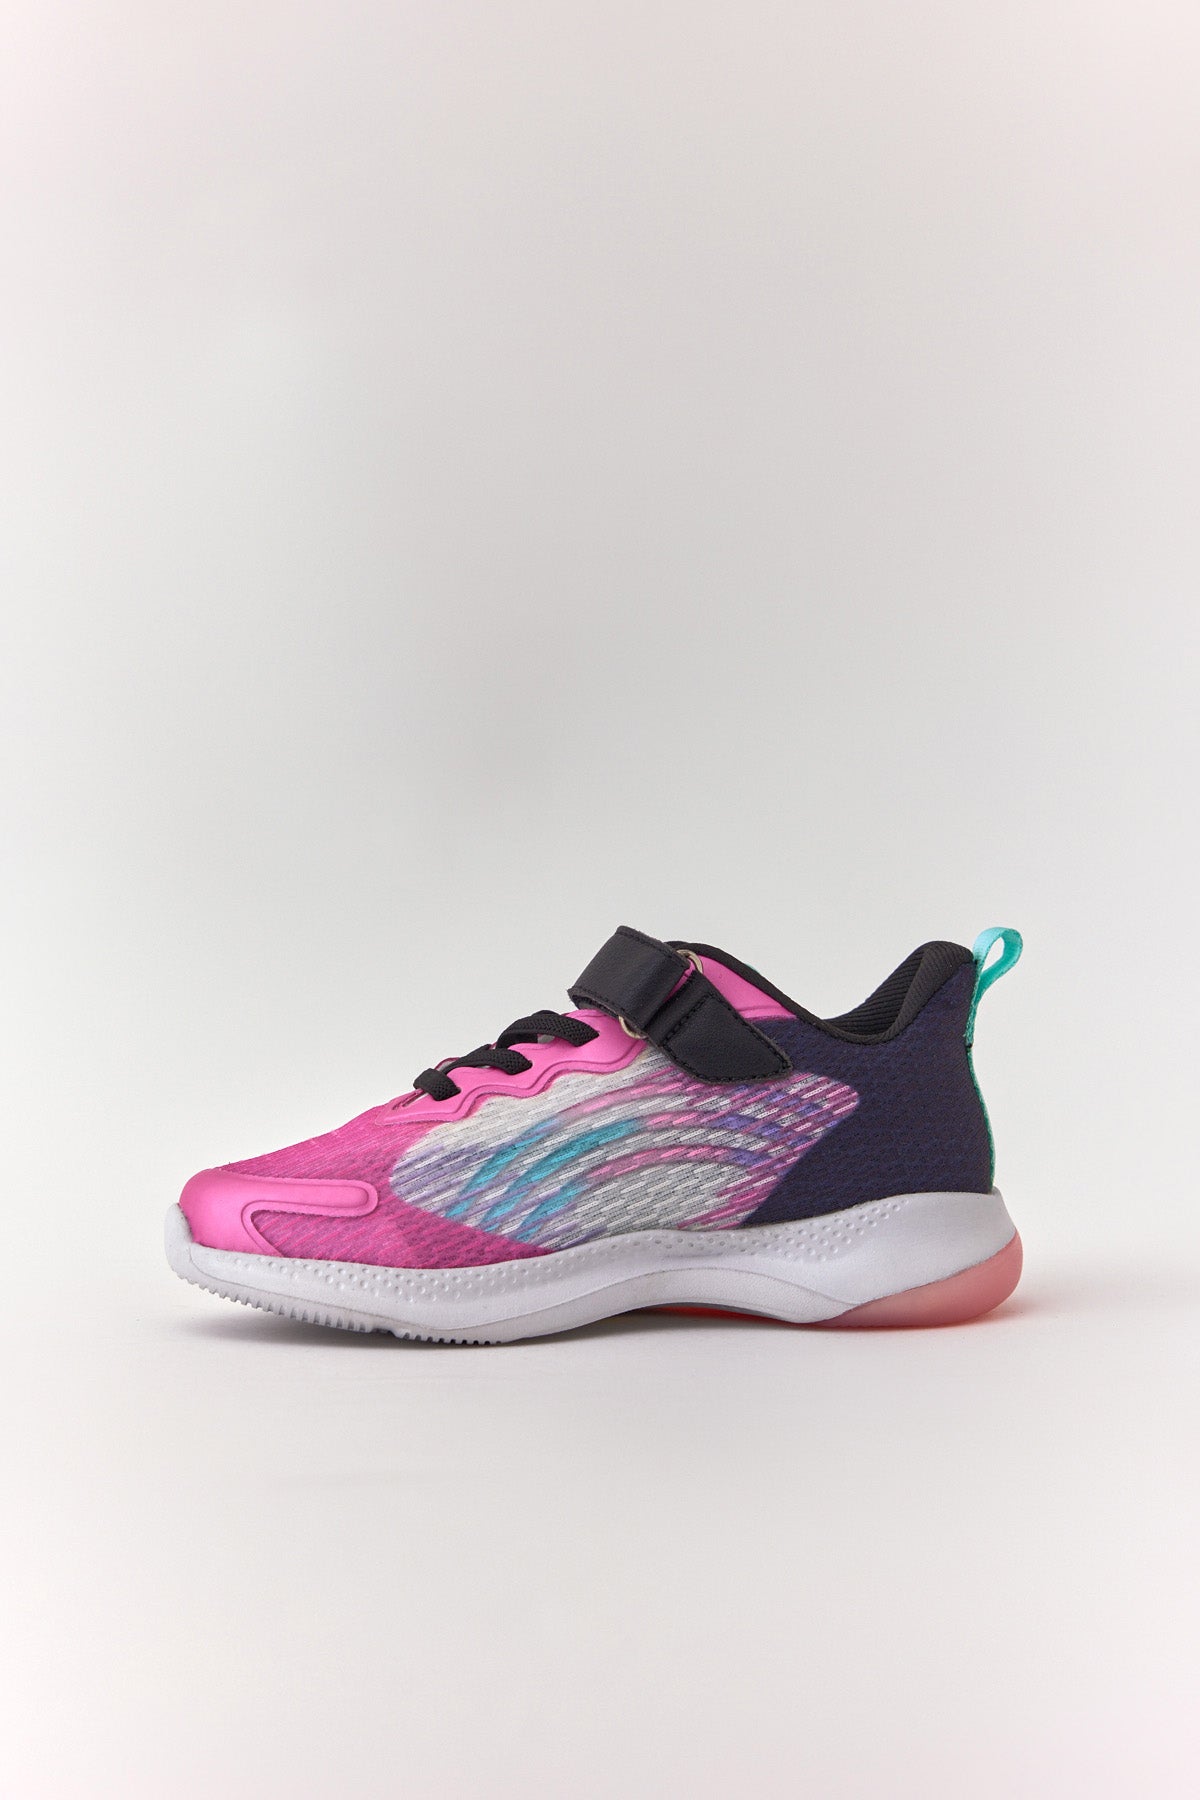 Pembe Kız Ibiza Kolay Giyilebilir Cırt Cırtlı Işıklı Çocuk Sneaker